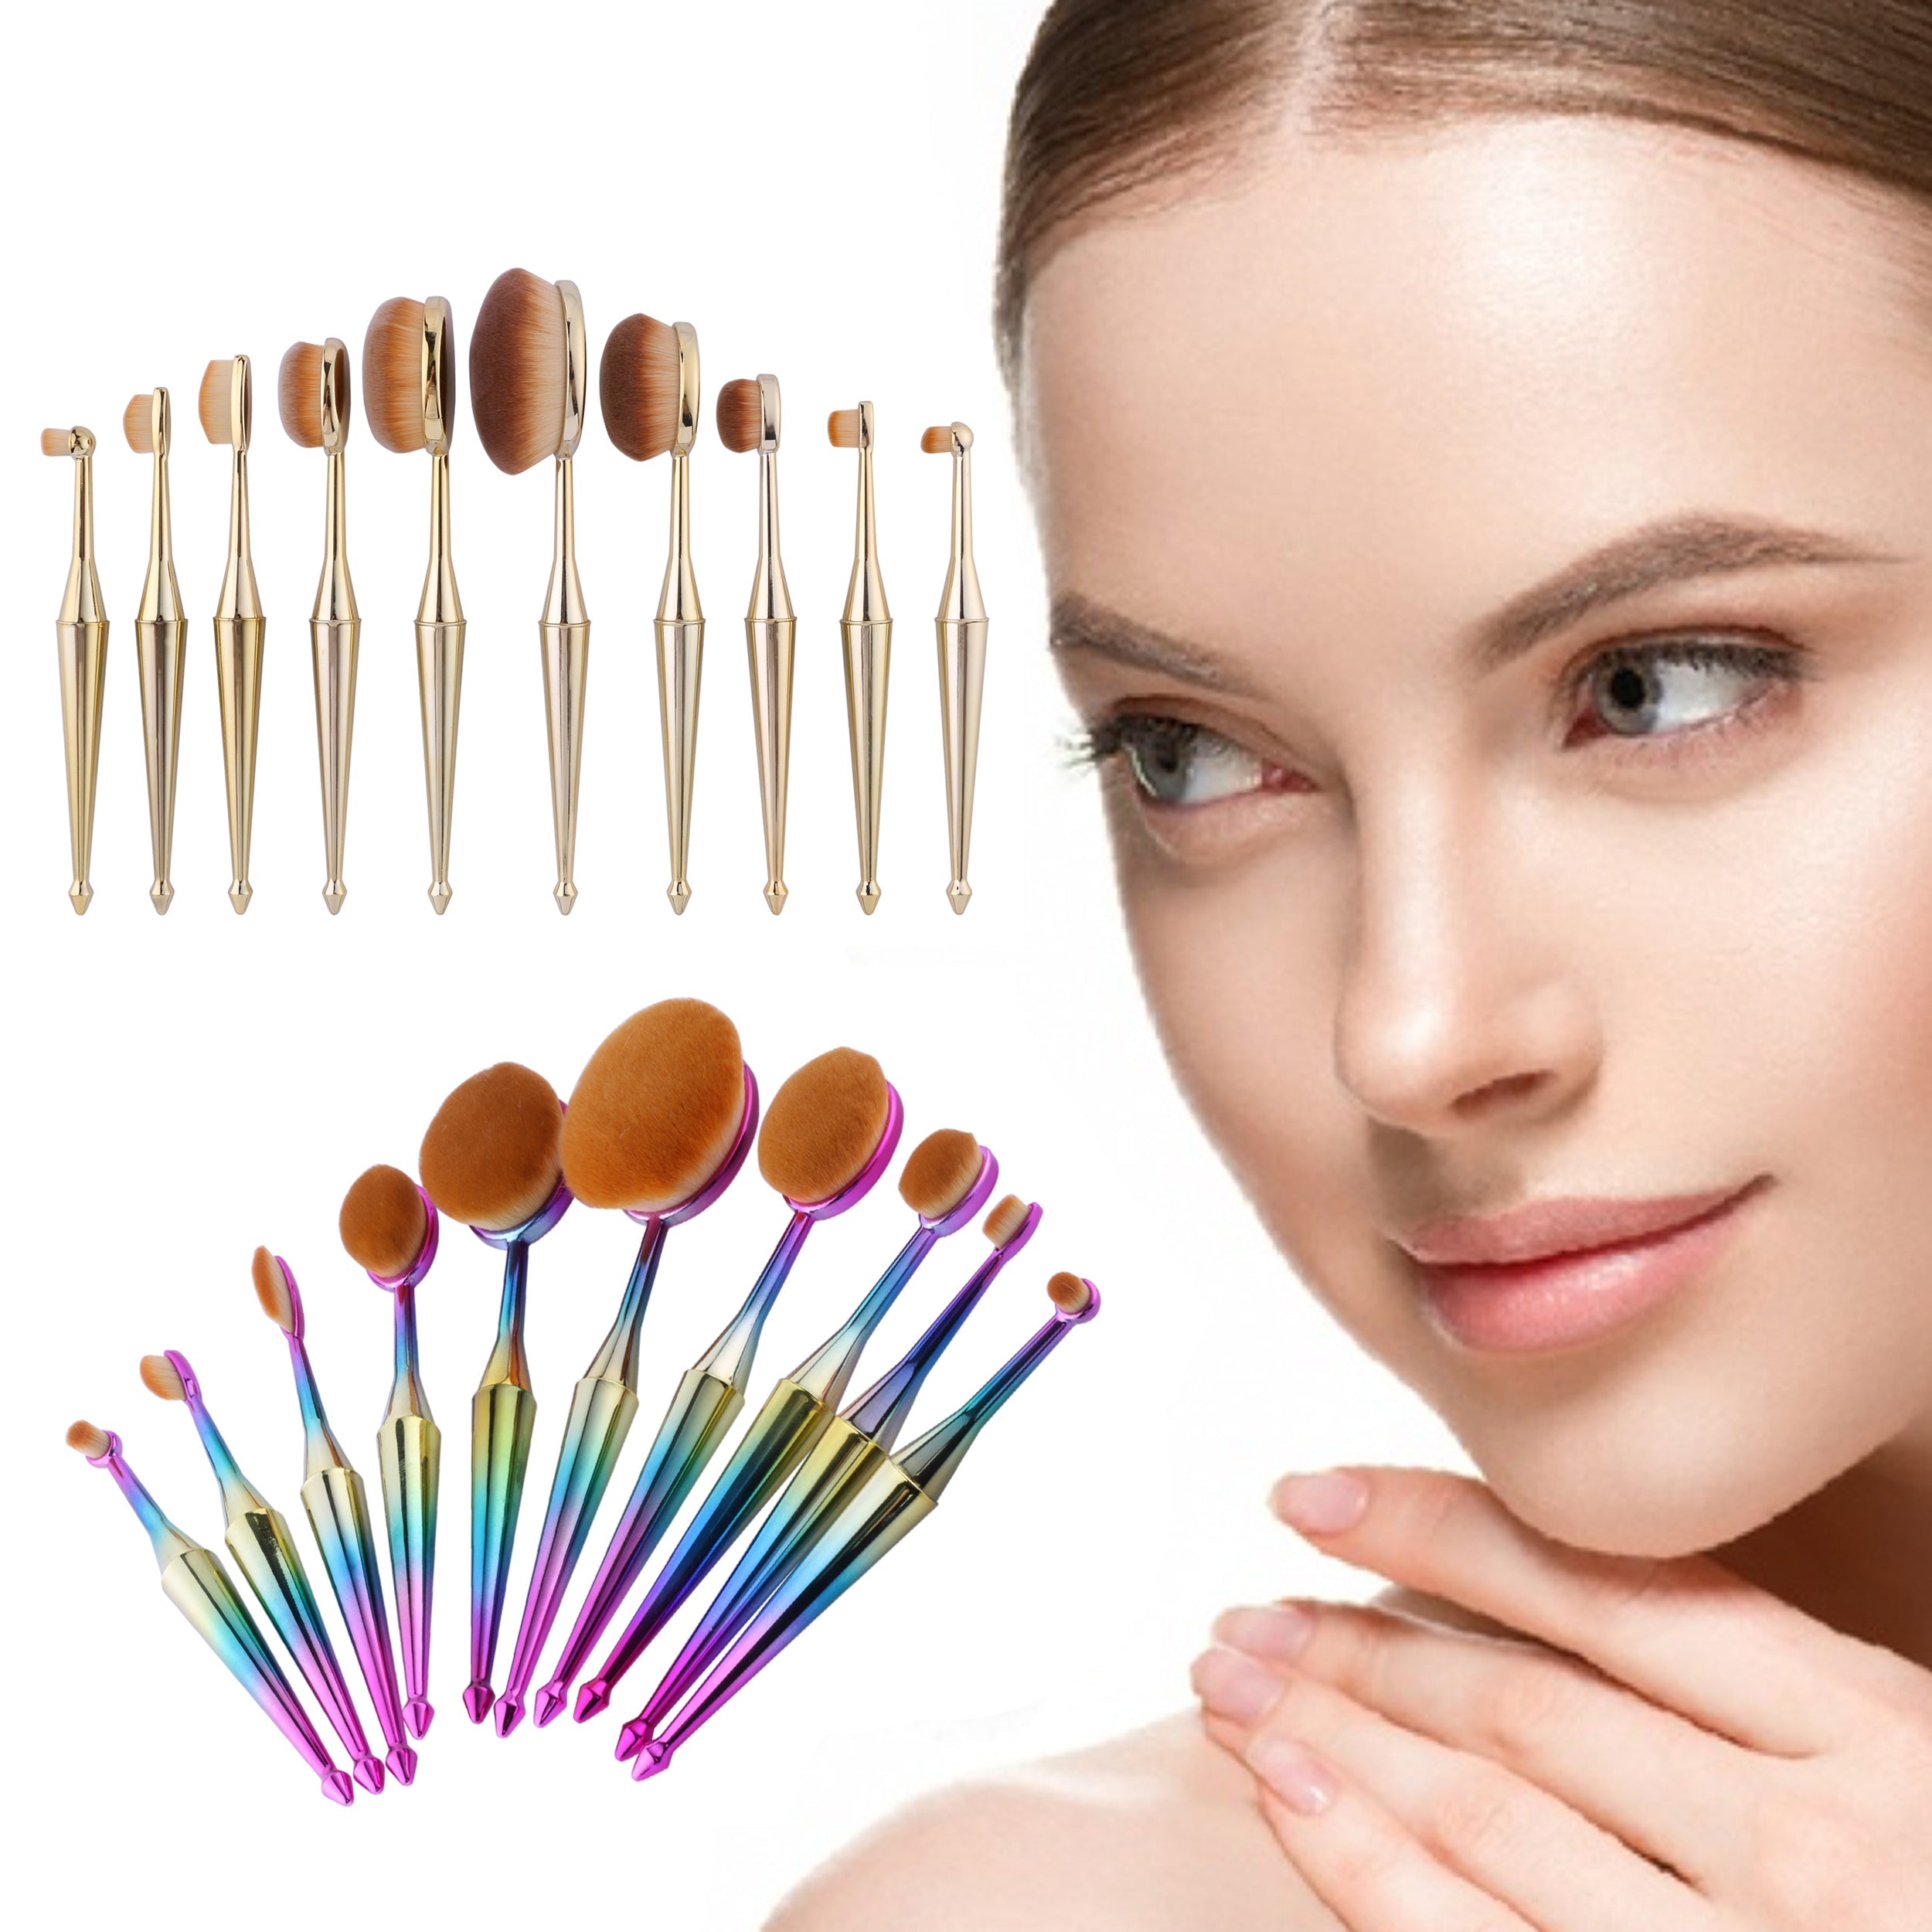 10-Piece Everyday Use Oval Kabuki Metallic Cosmetic Makeup Brushes Set –  AMORÉ PARIS USA